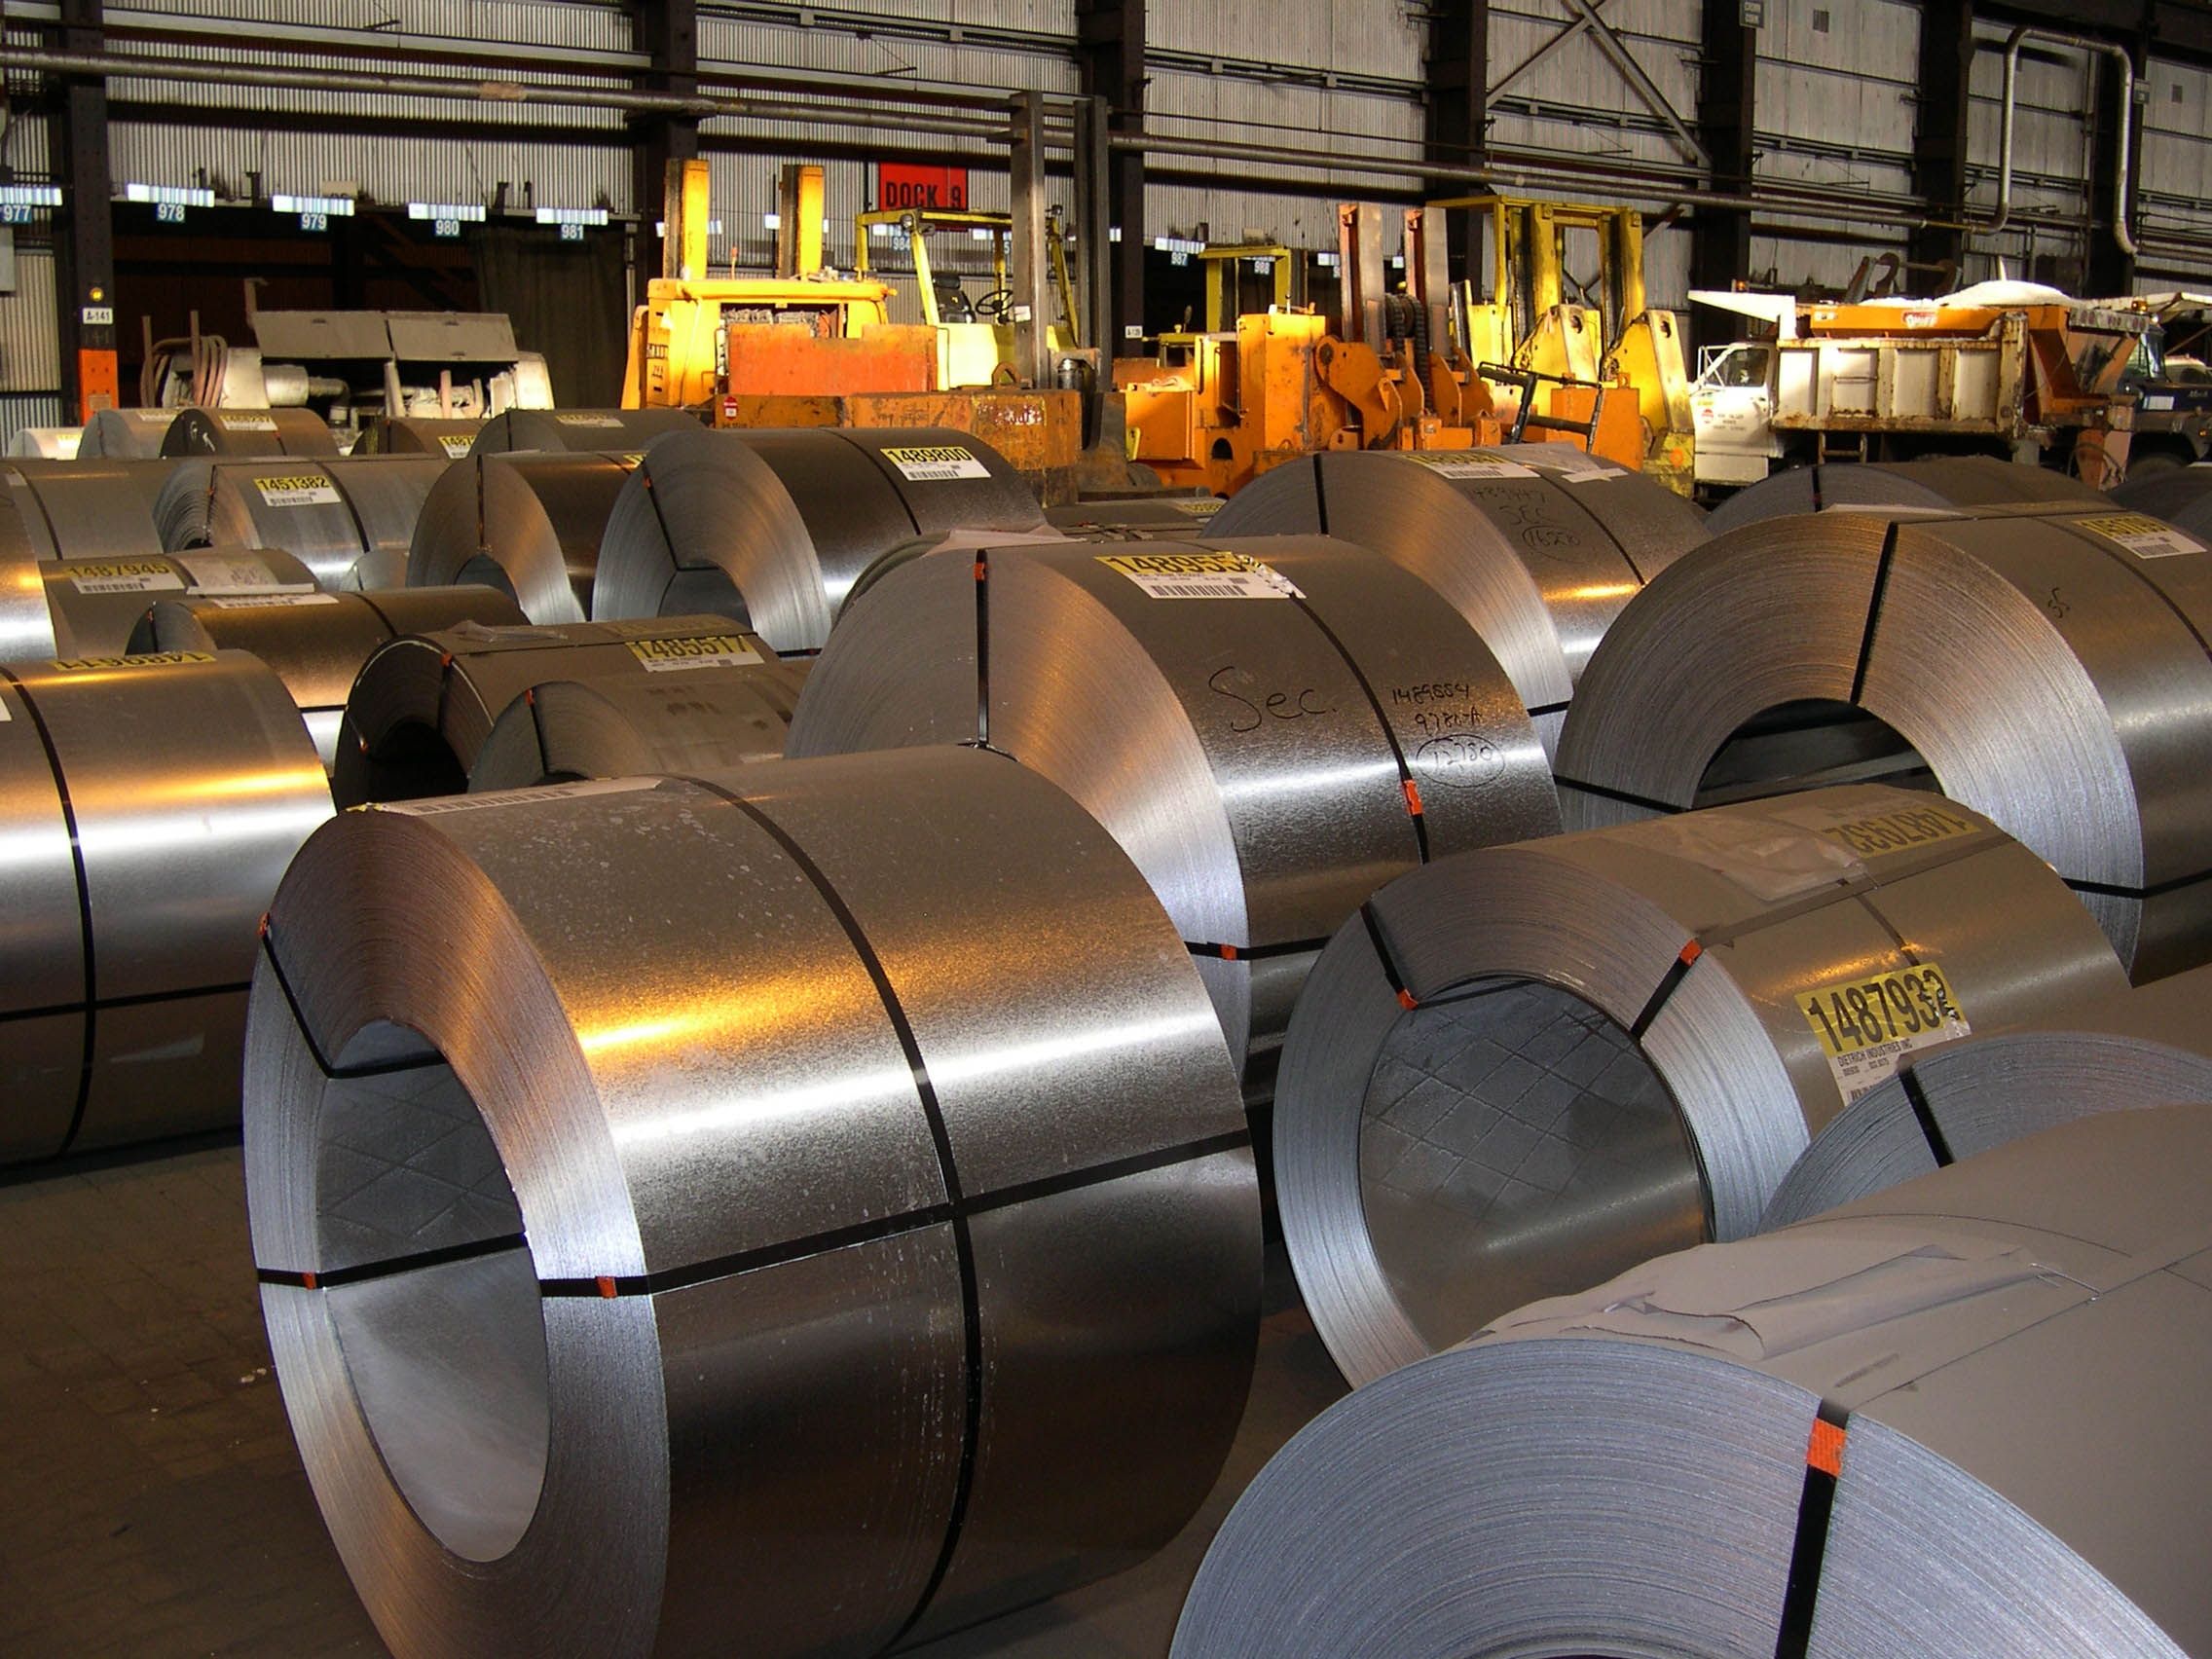 El gobierno de Estados Unidos acordó otorgar un cupo para las importaciones de acero originario de Japón. The United States government agreed to grant a quota for imports of steel originating in Japan.